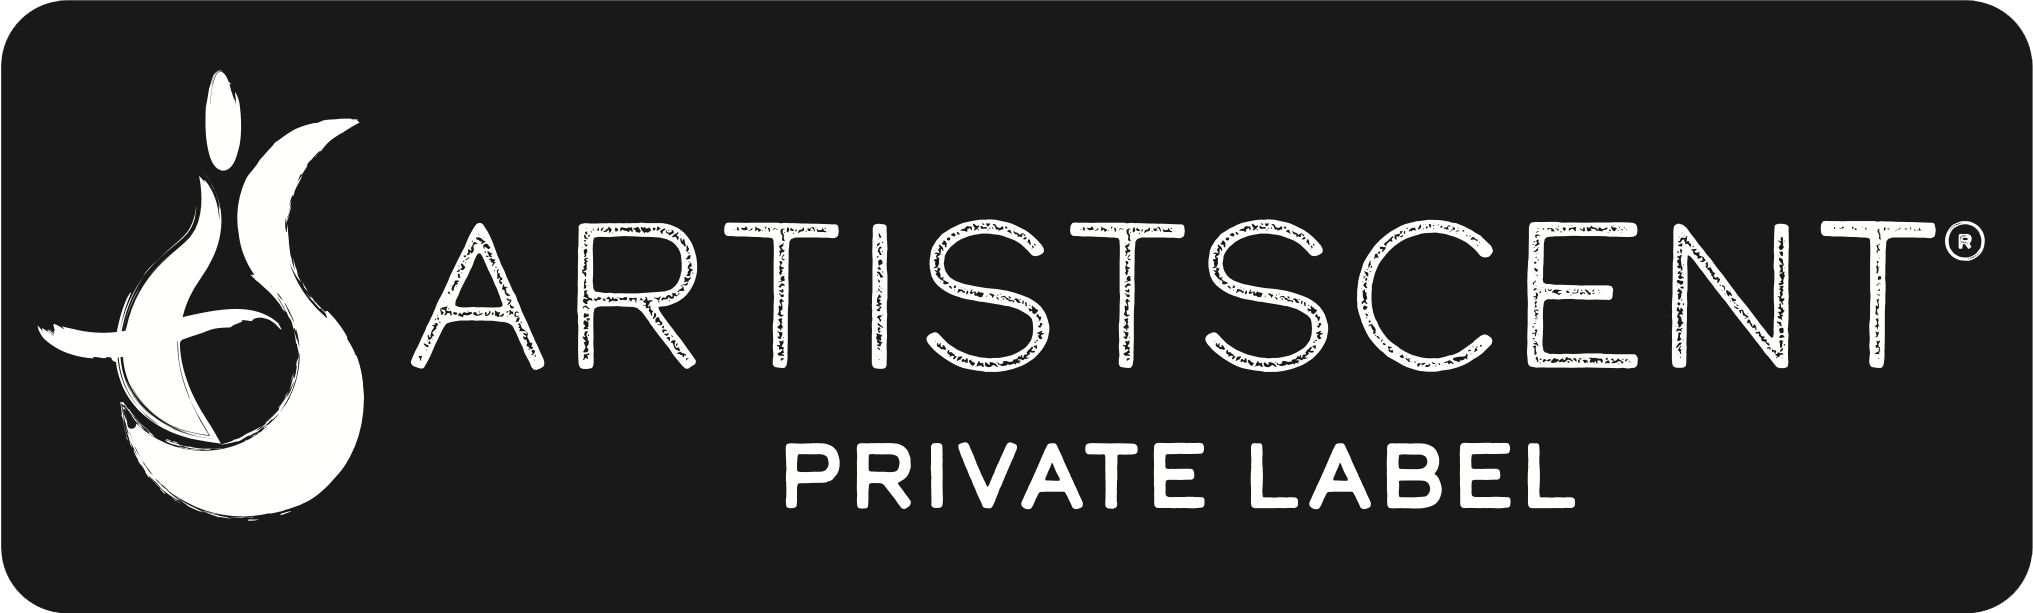 Artistscent Private Label